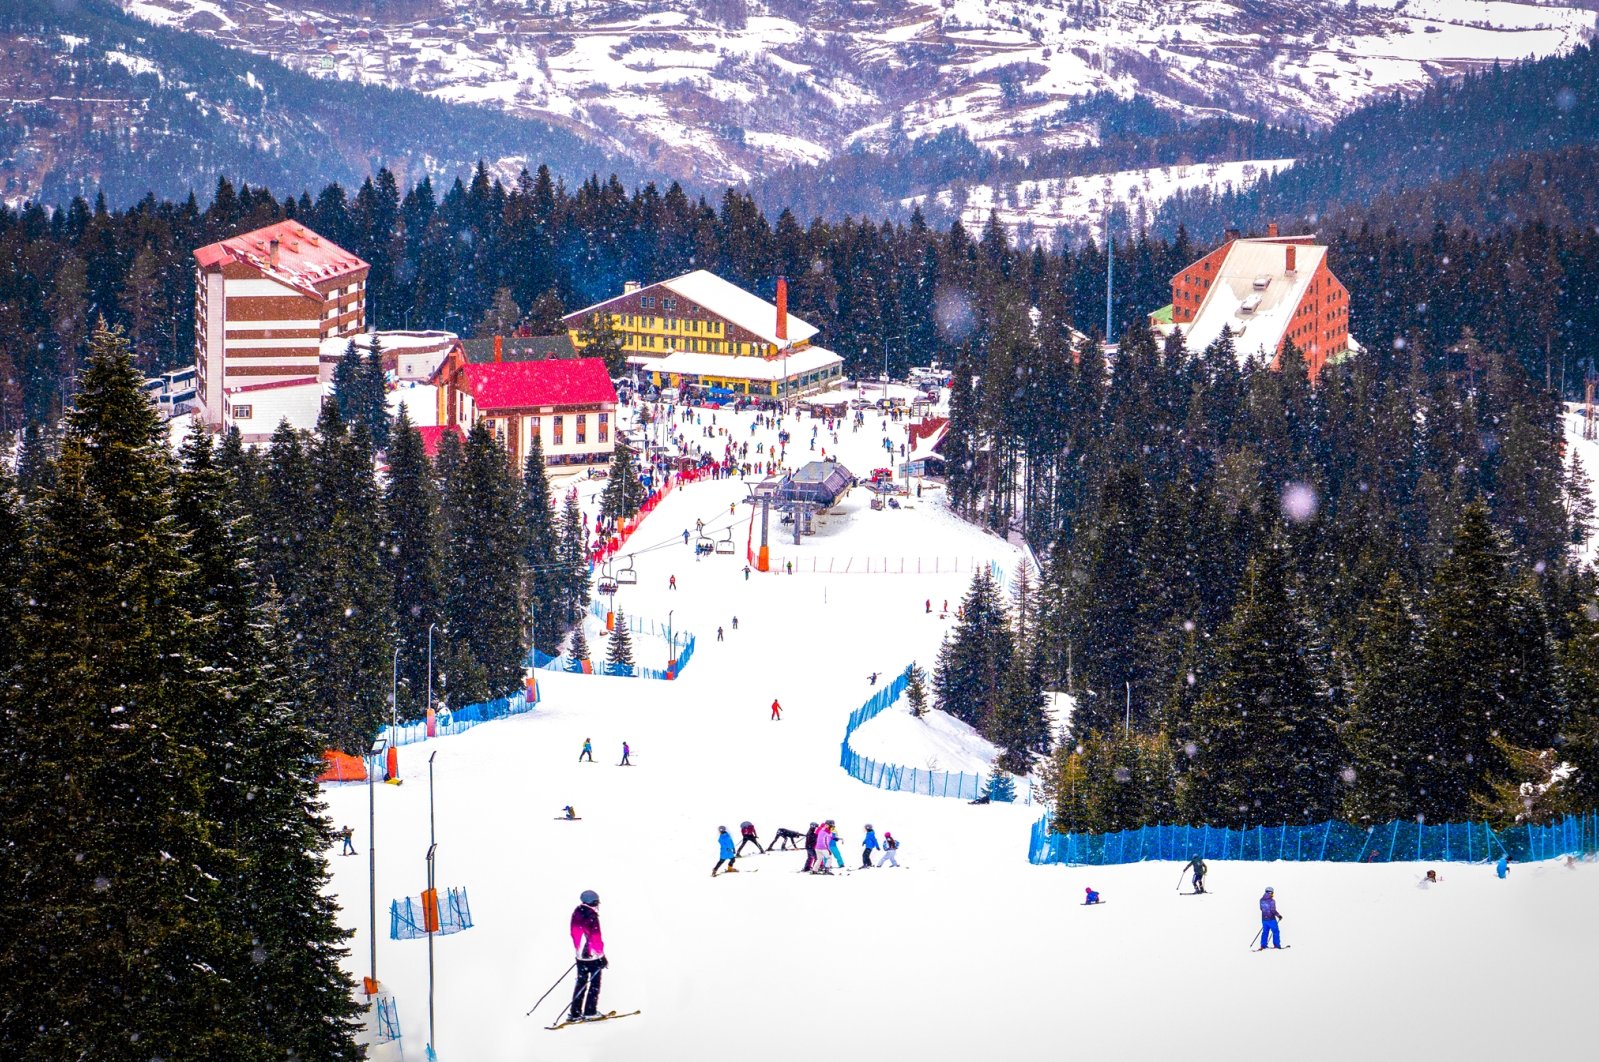 People enjoy the snow at Ilgaz Ski Center in Ilgaz, Çankırı, Türkiye. (Shutterstock Photo)